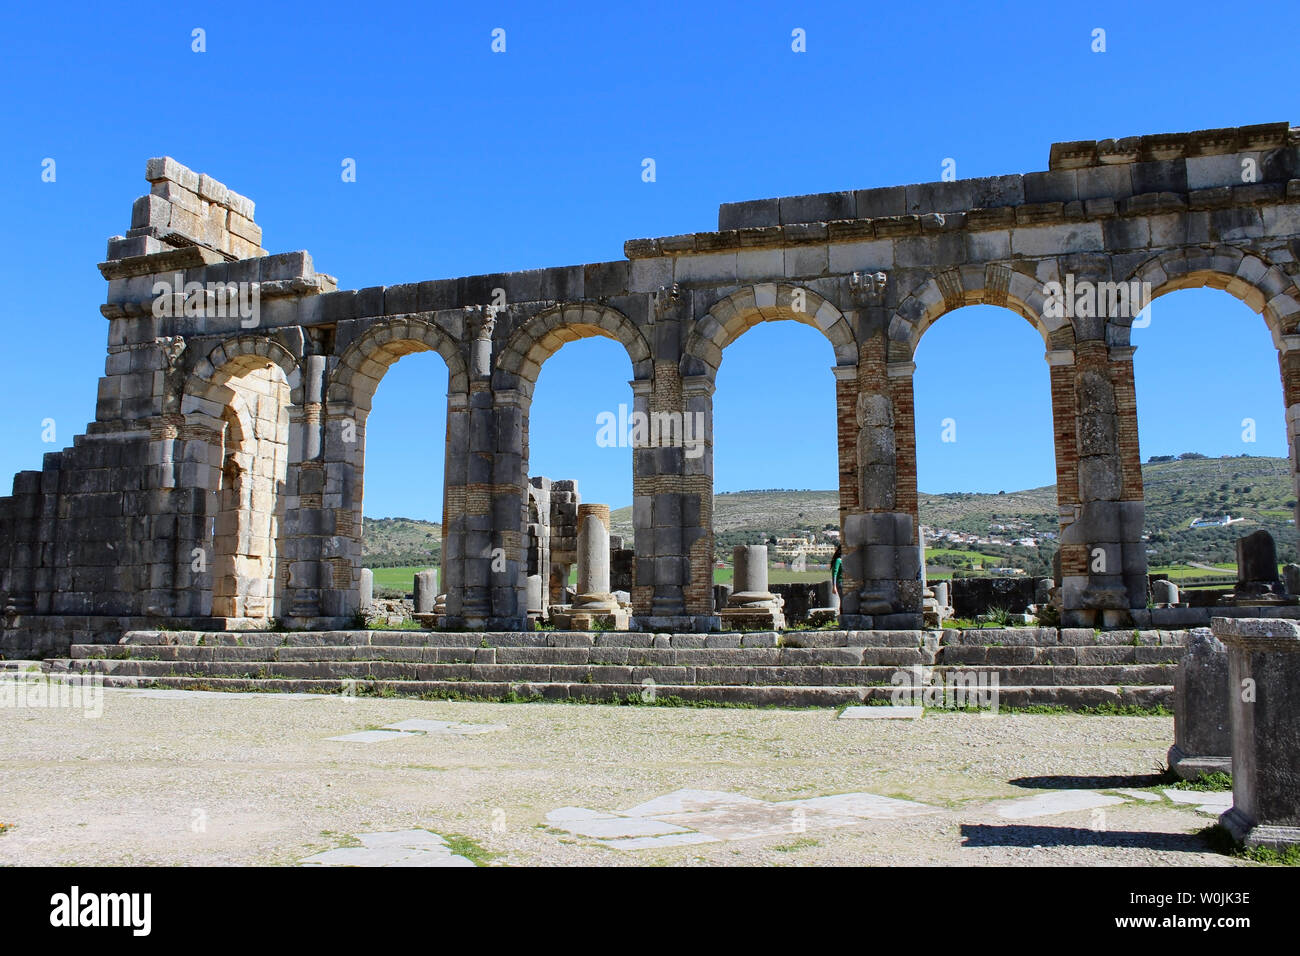 Volubilis war eine römische Stadt, die Ruinen, von denen derzeit teilweise sind eine archäologische Stätte, gelegen auf der Marokko ausgegraben. Stockfoto